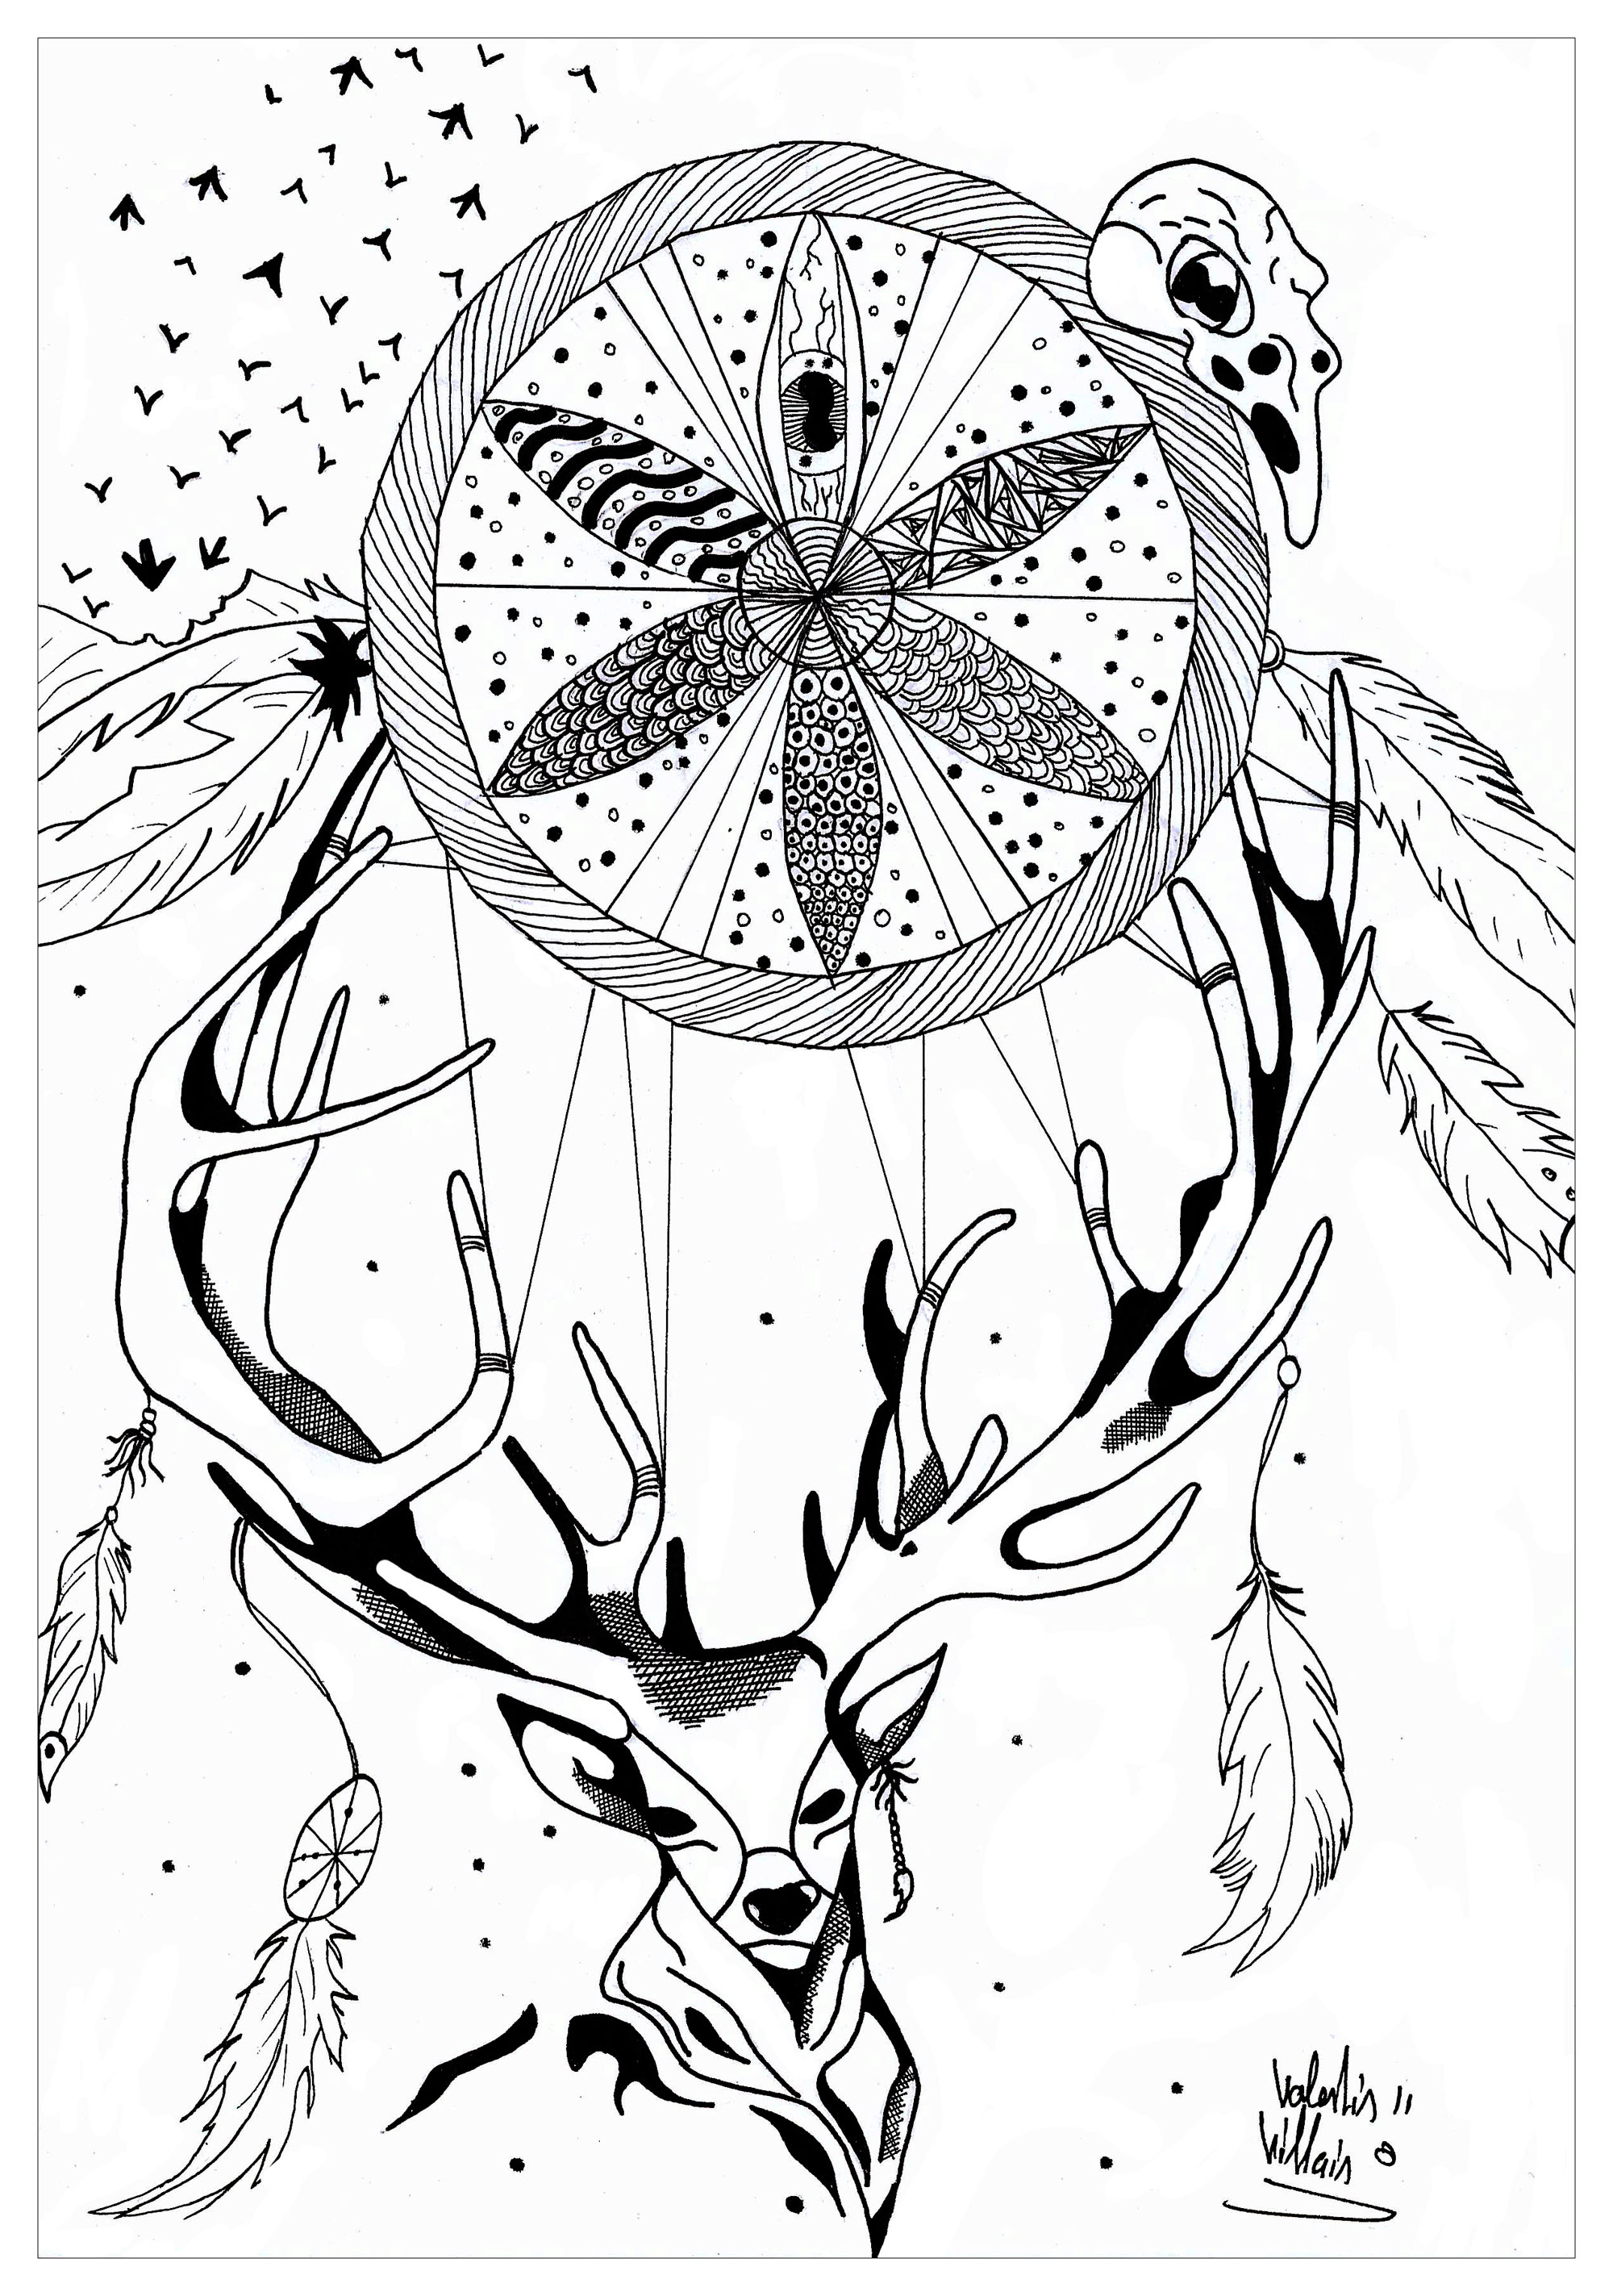 Página para colorear de un ciervo con un atrapasueños. Este original dibujo representa un ciervo con una hermosa cornamenta que sostiene un increíble atrapasueños, Artista : Valentin